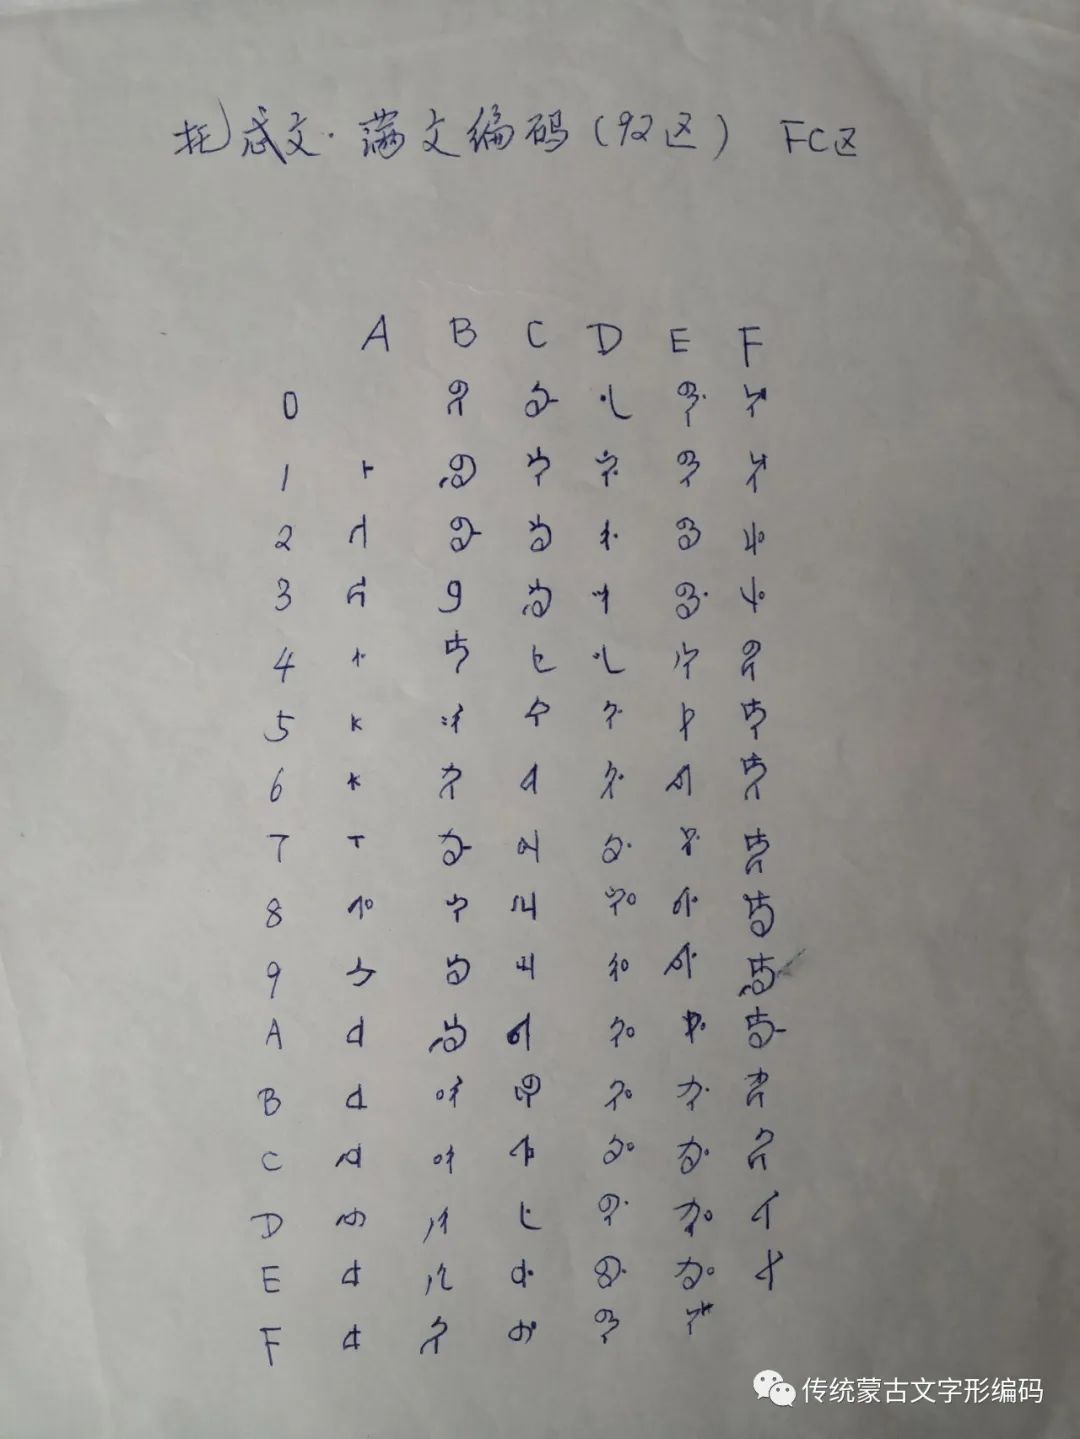 蒙古文手写体对照表图片